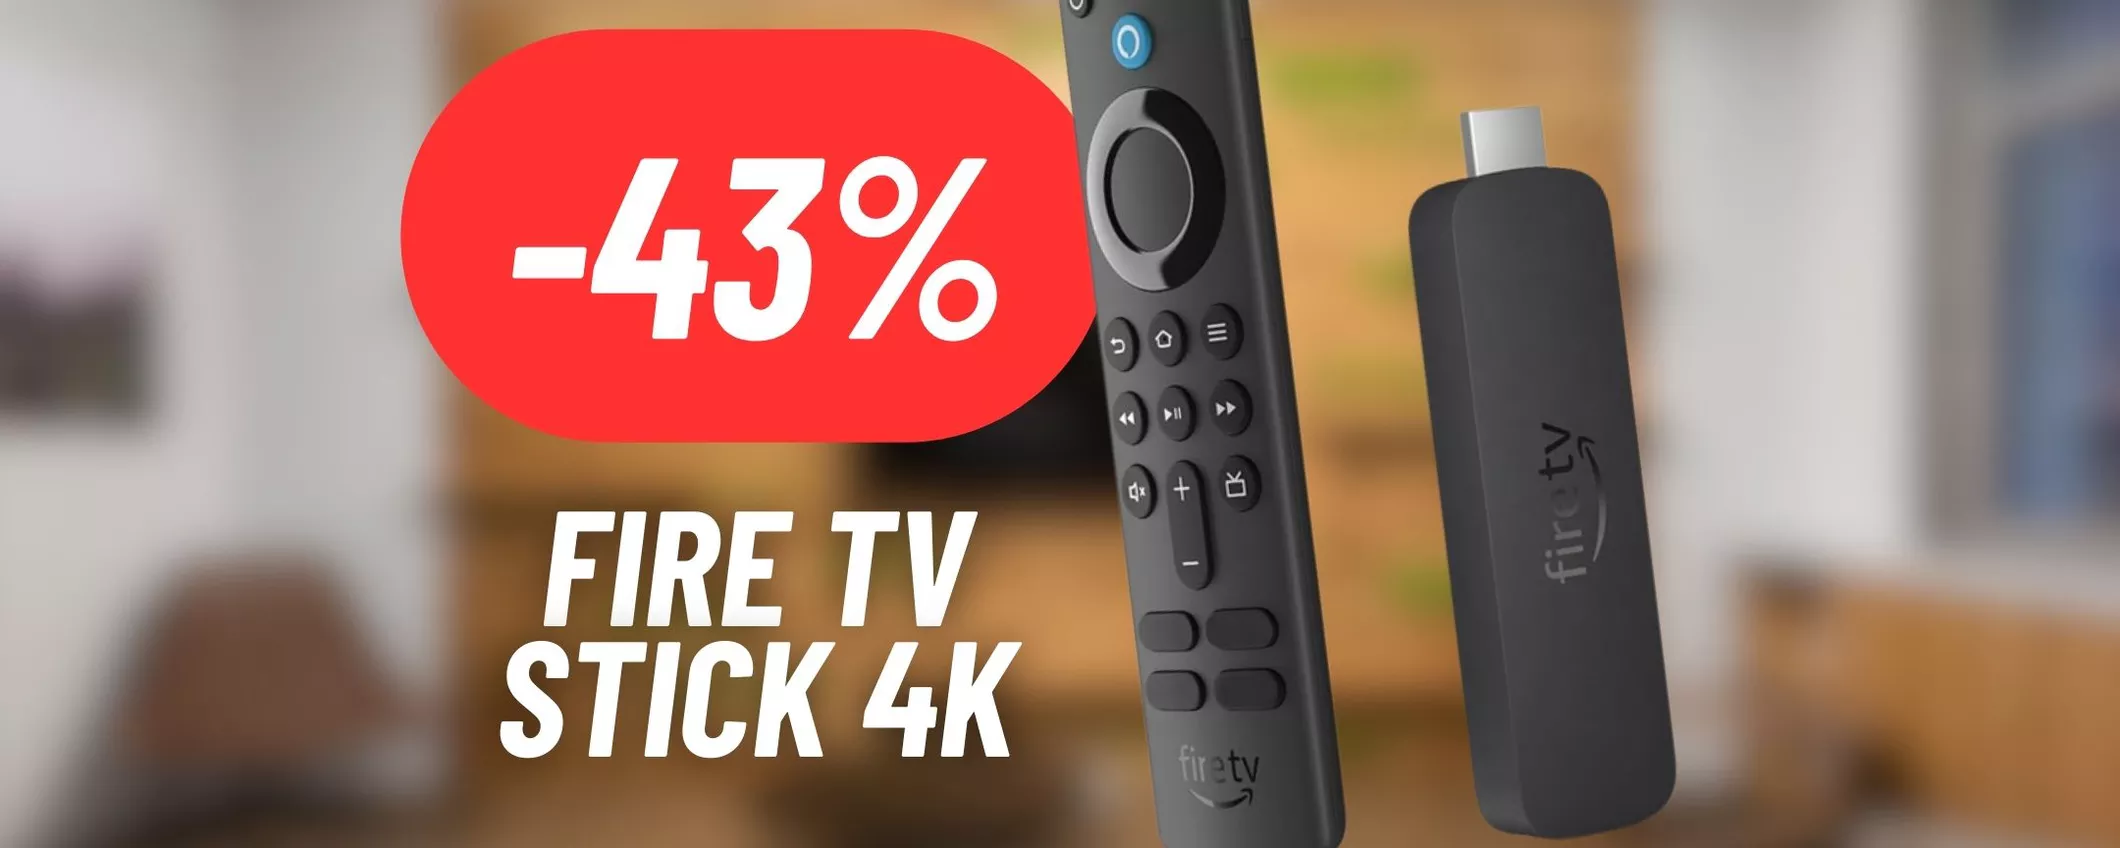 Rendi la tua TV Smart alla massima qualità con la Fire TV Stick 4K al 43% DI SCONTO